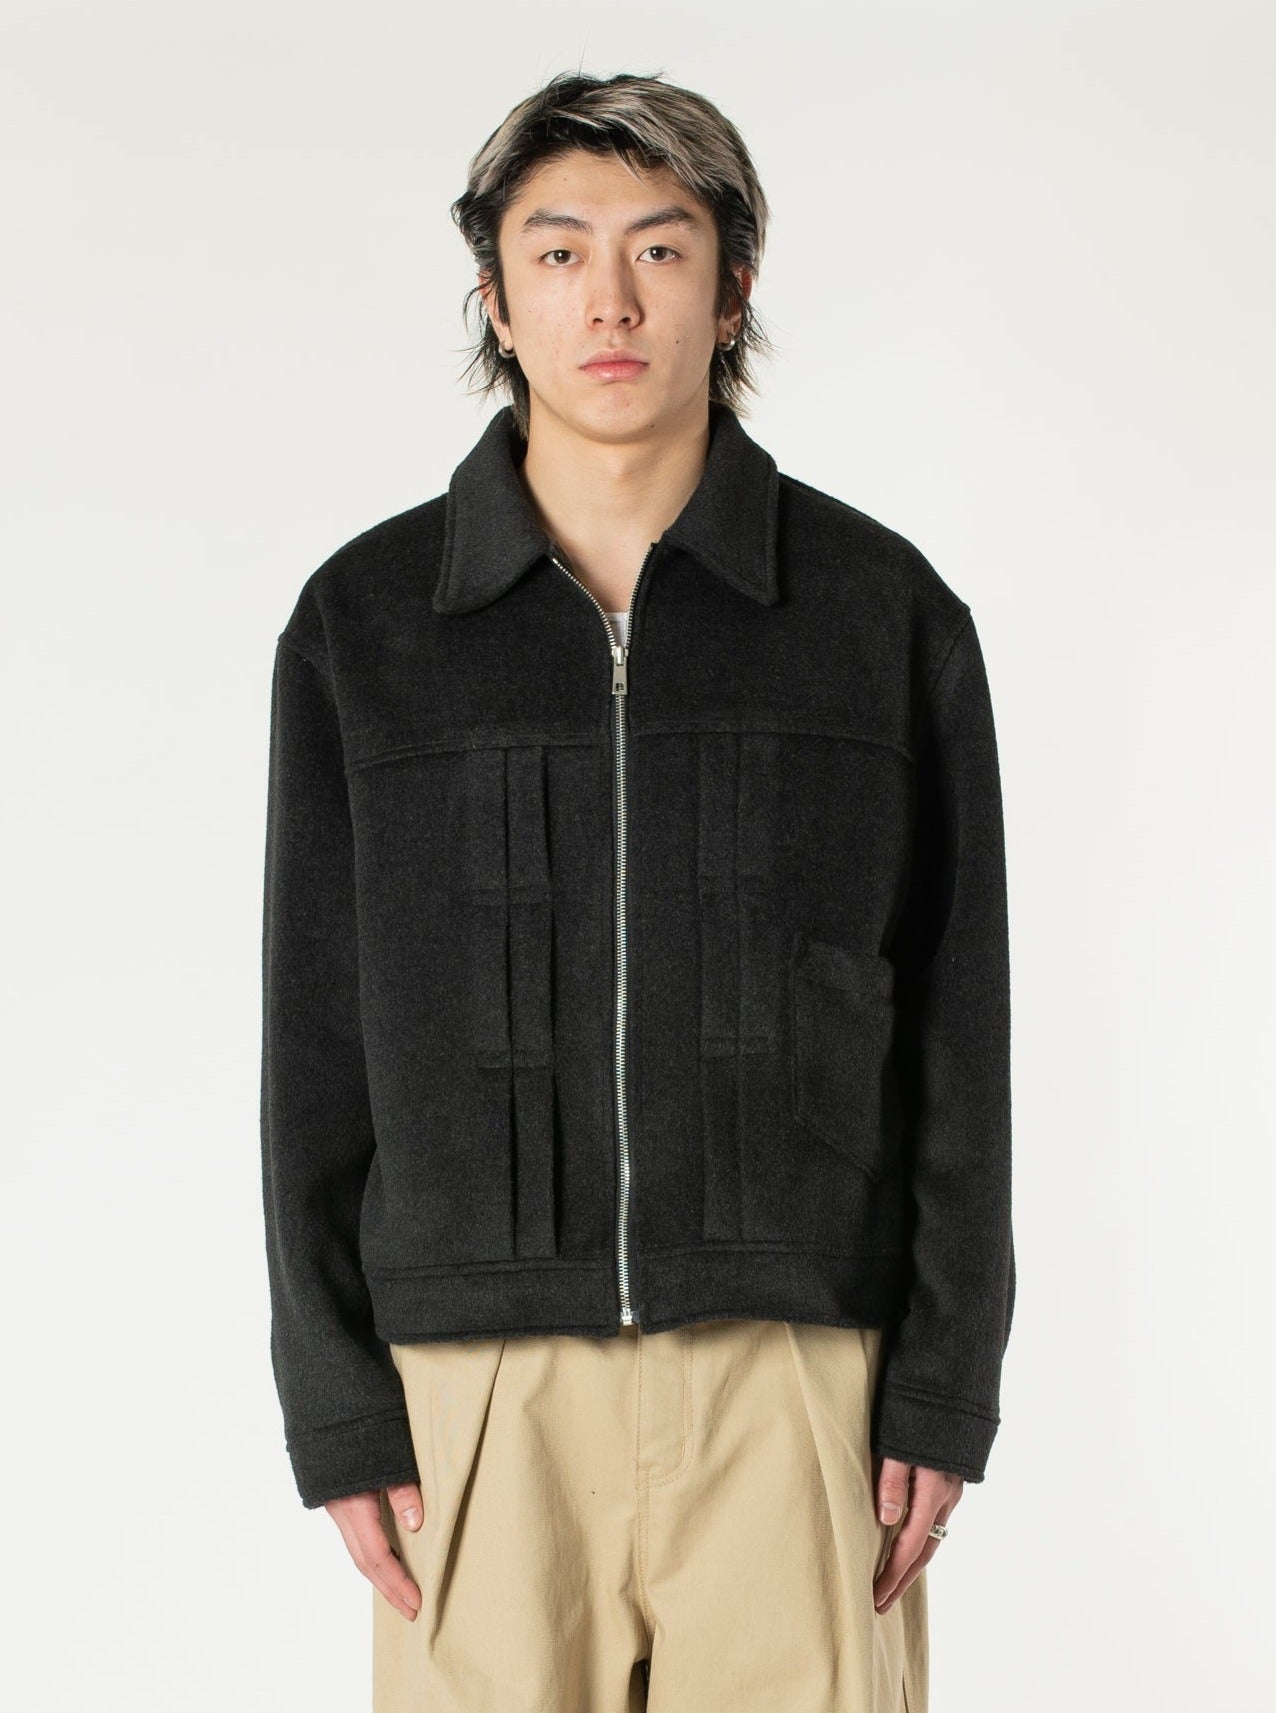 Pleated Wool Jacket